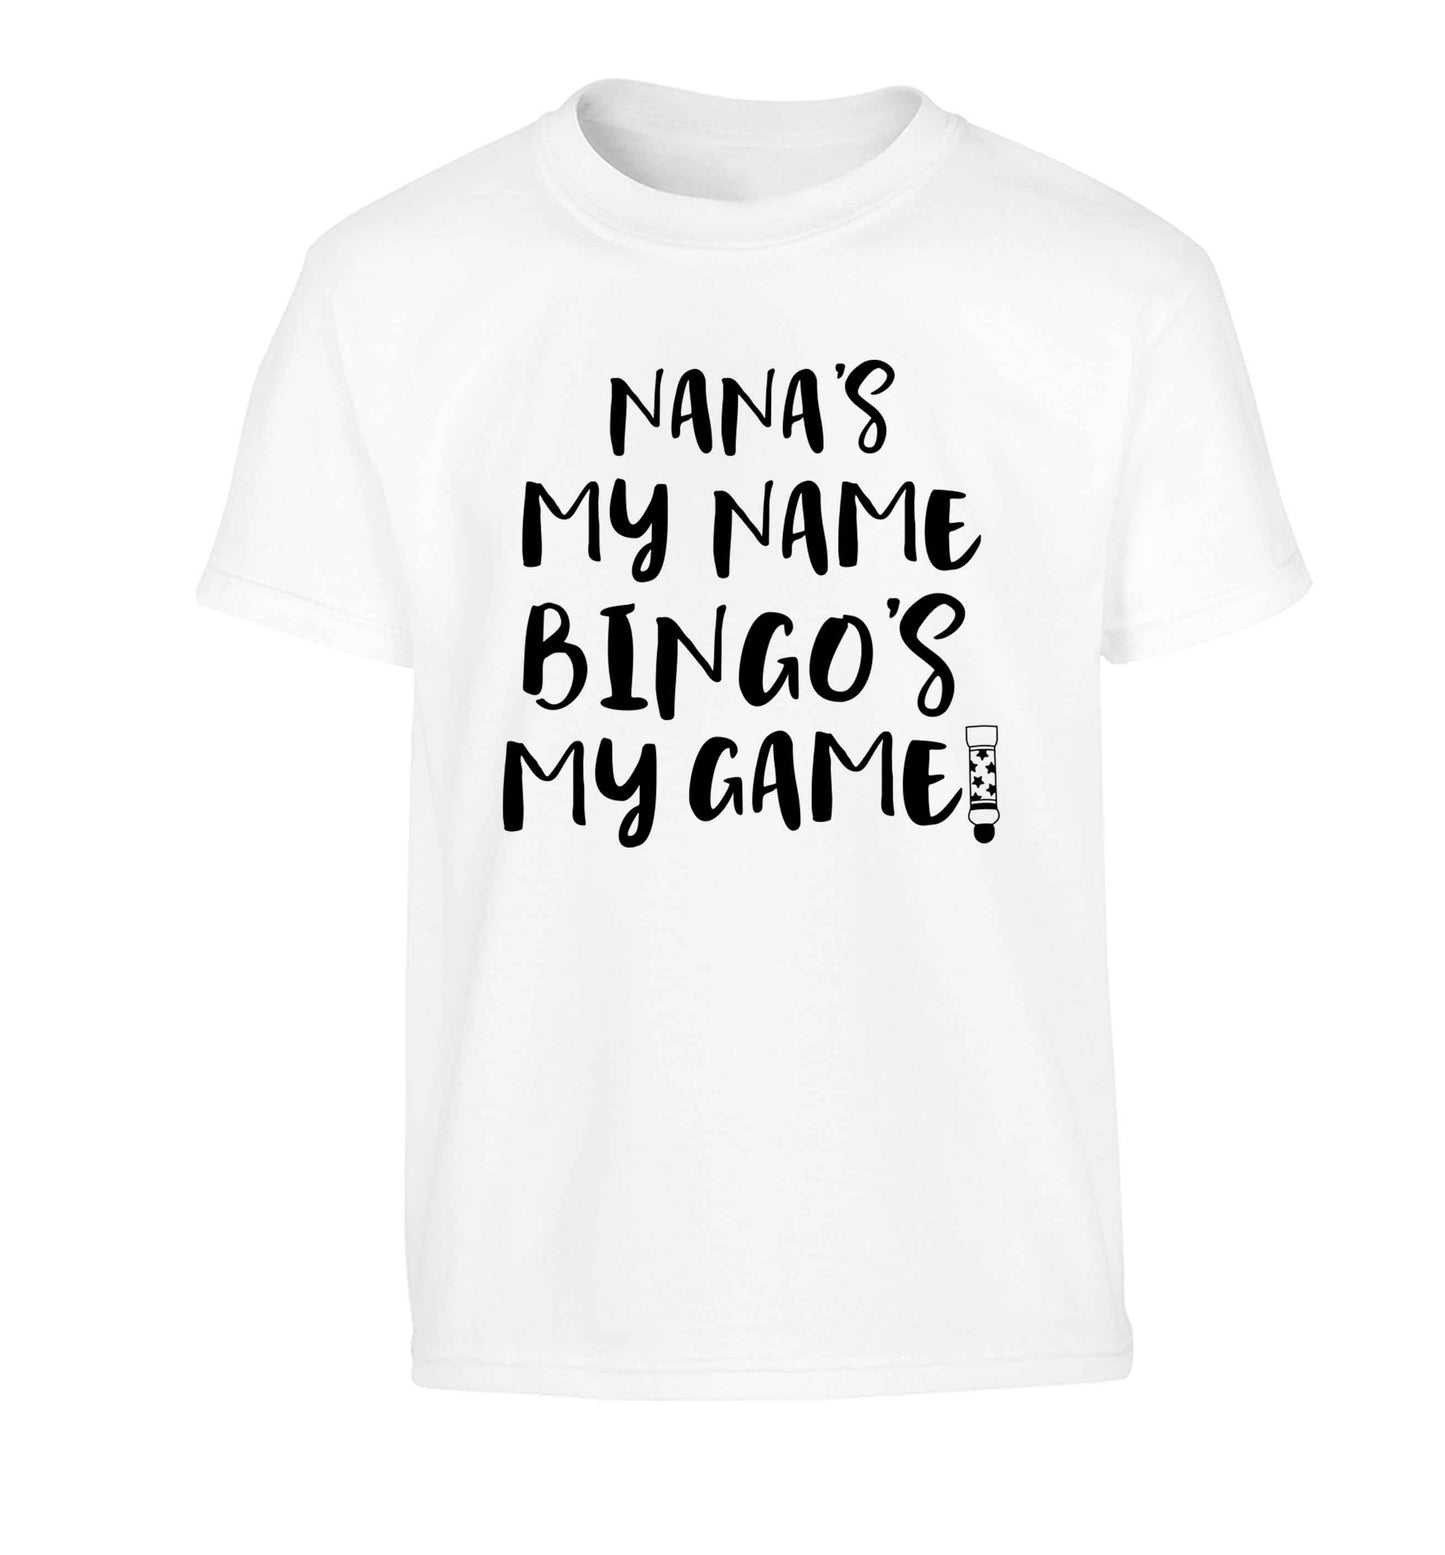 Nana's my name bingo's my game! Children's white Tshirt 12-13 Years